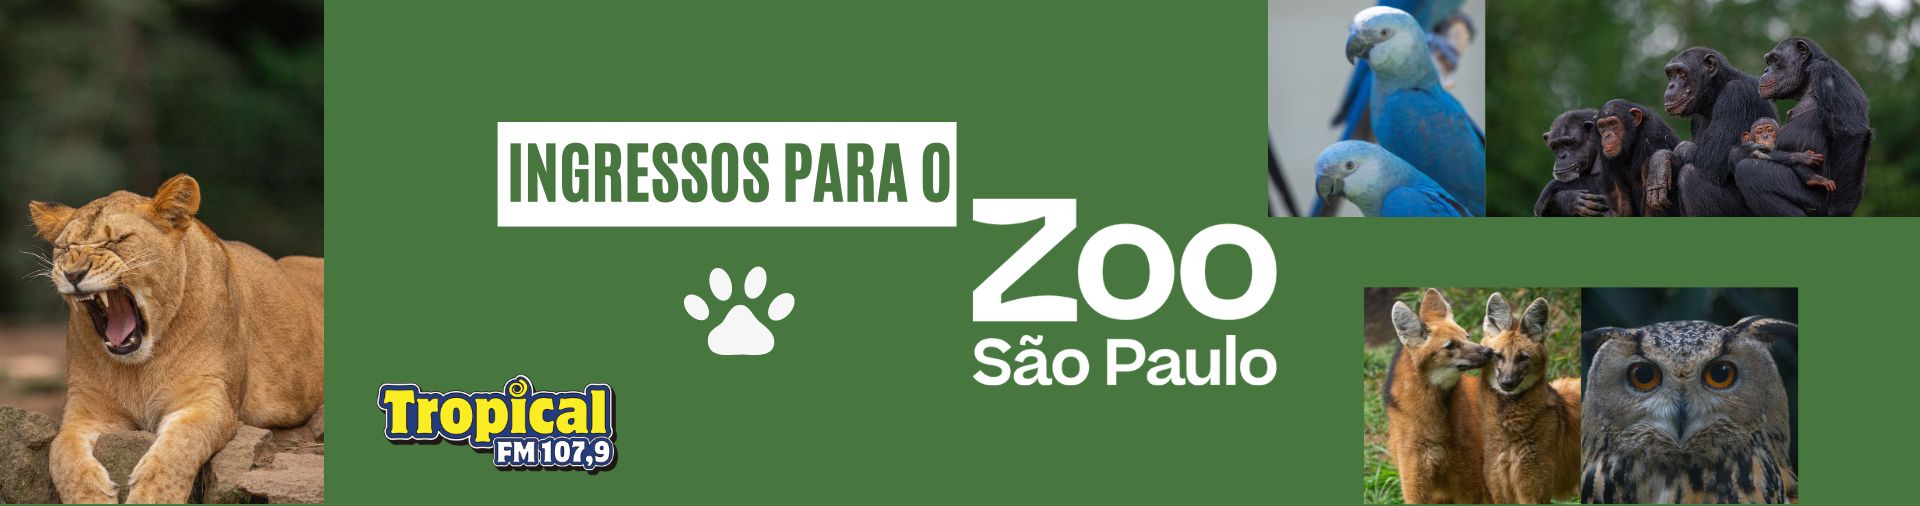 Banner Ingressos para o Zoo SP